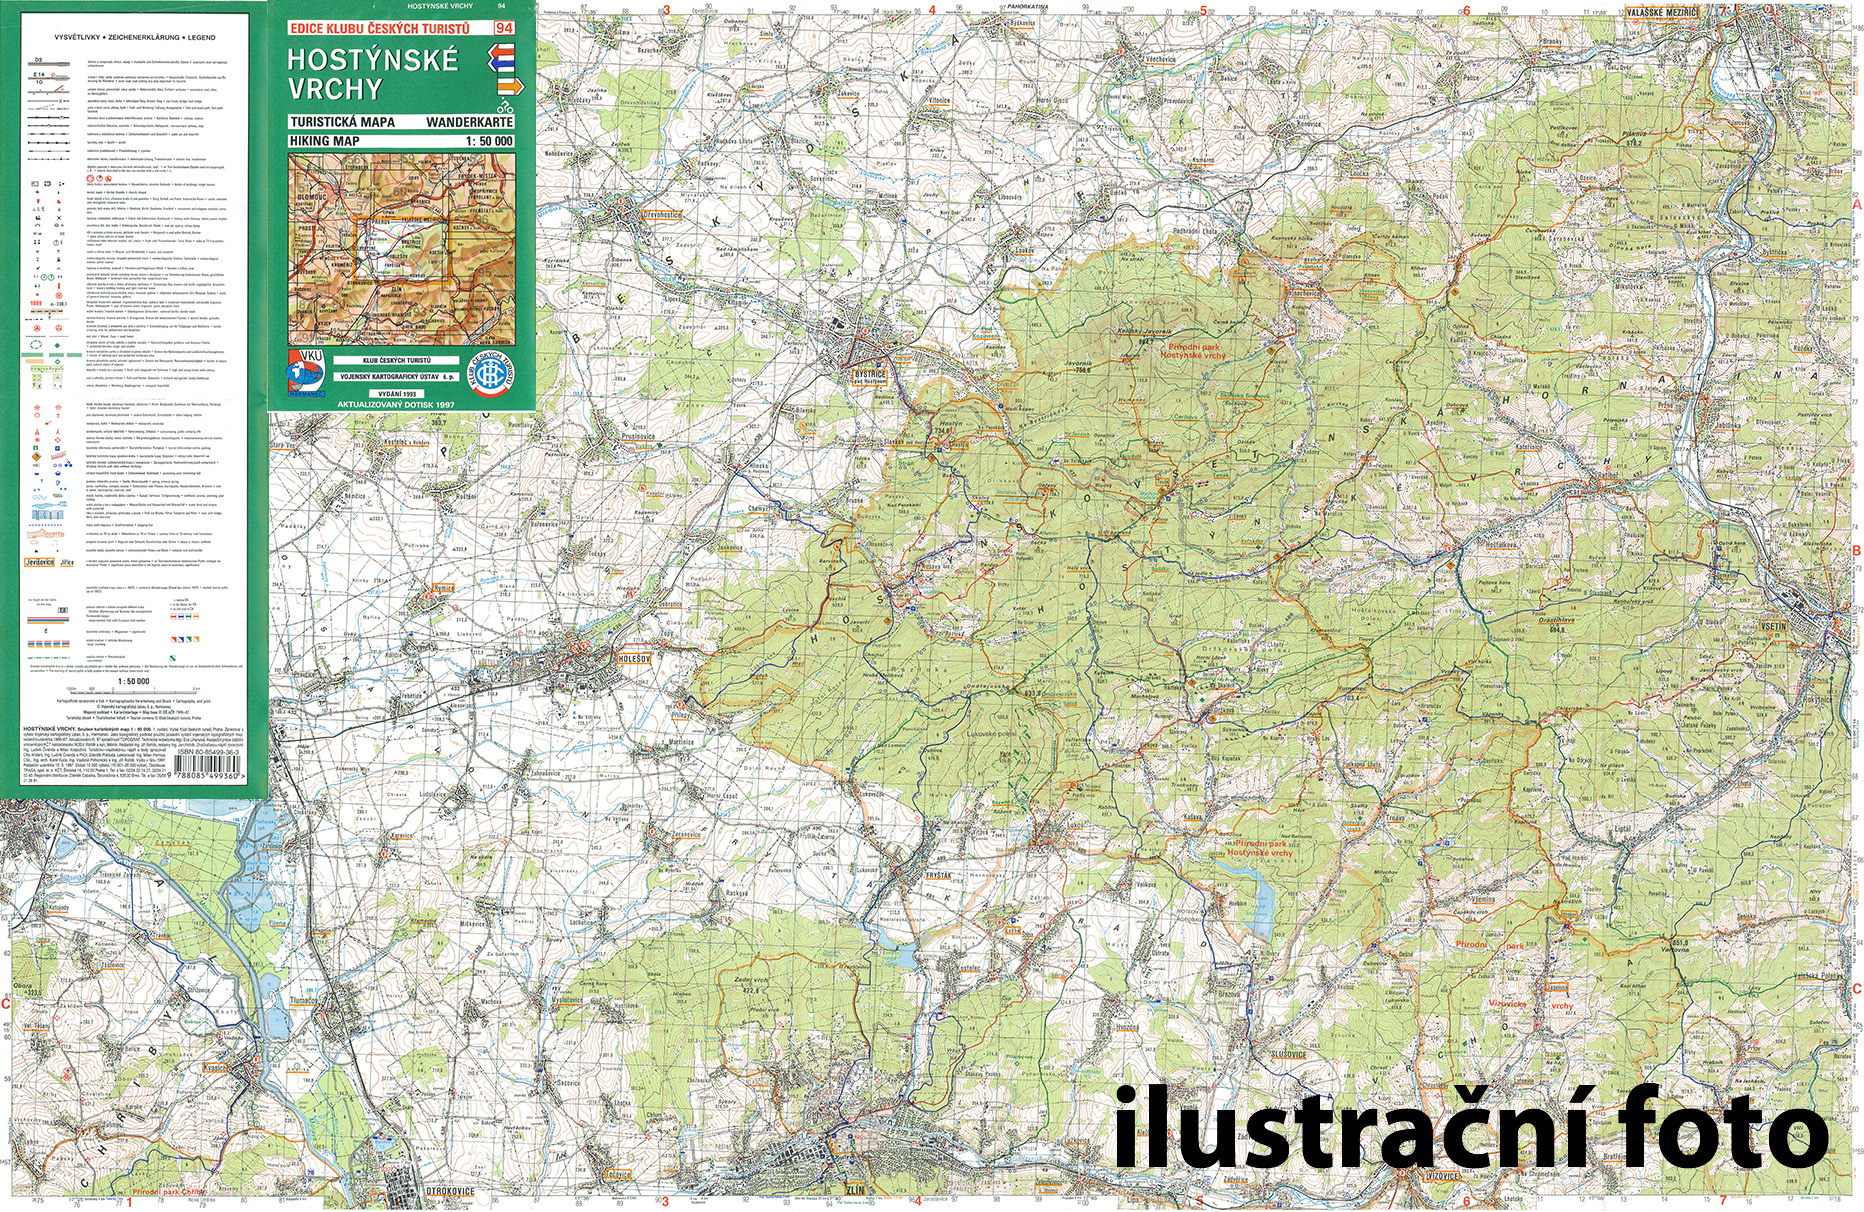 Nástěnná mapa Lounsko a Džbán - turistická (08)